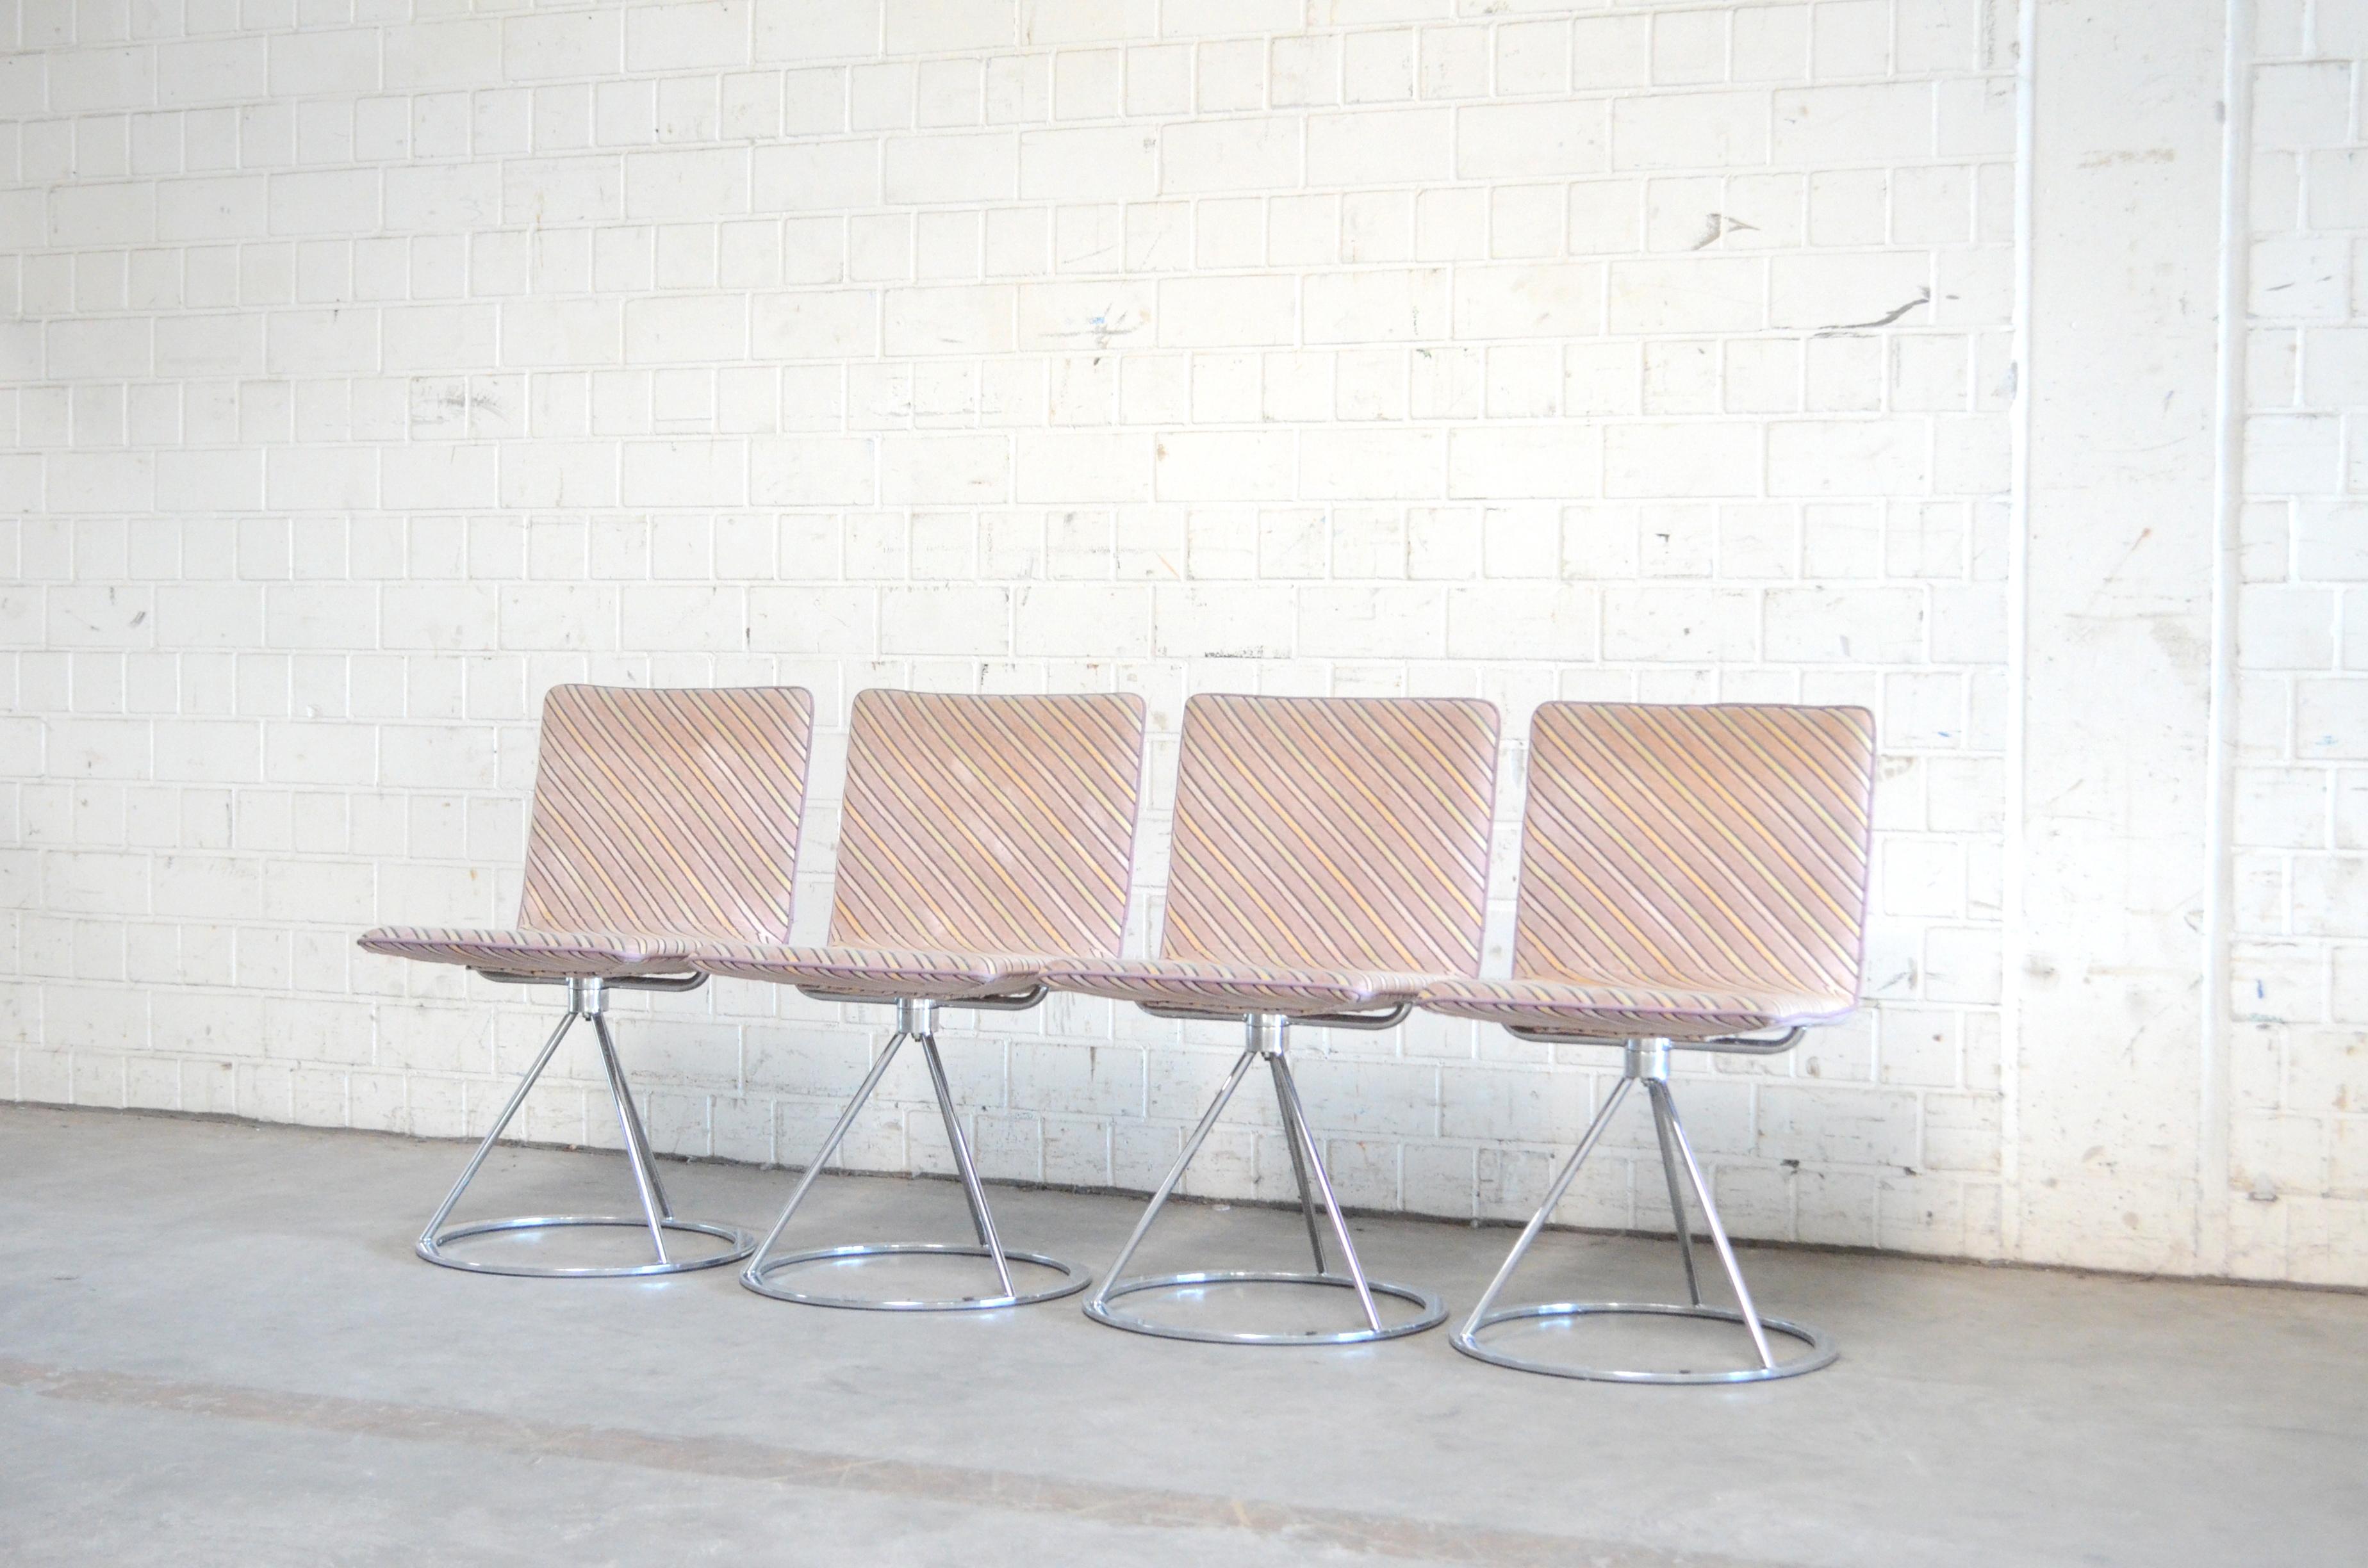 Ces chaises de design italien datent des années 1980 et sont conçues par Salvati e Tresoldi et fabriquées par Saporiti Italia.
Une chaise au design contemporain avec une base rotative en acier chromé et une assise rembourrée.
Le tissu est un